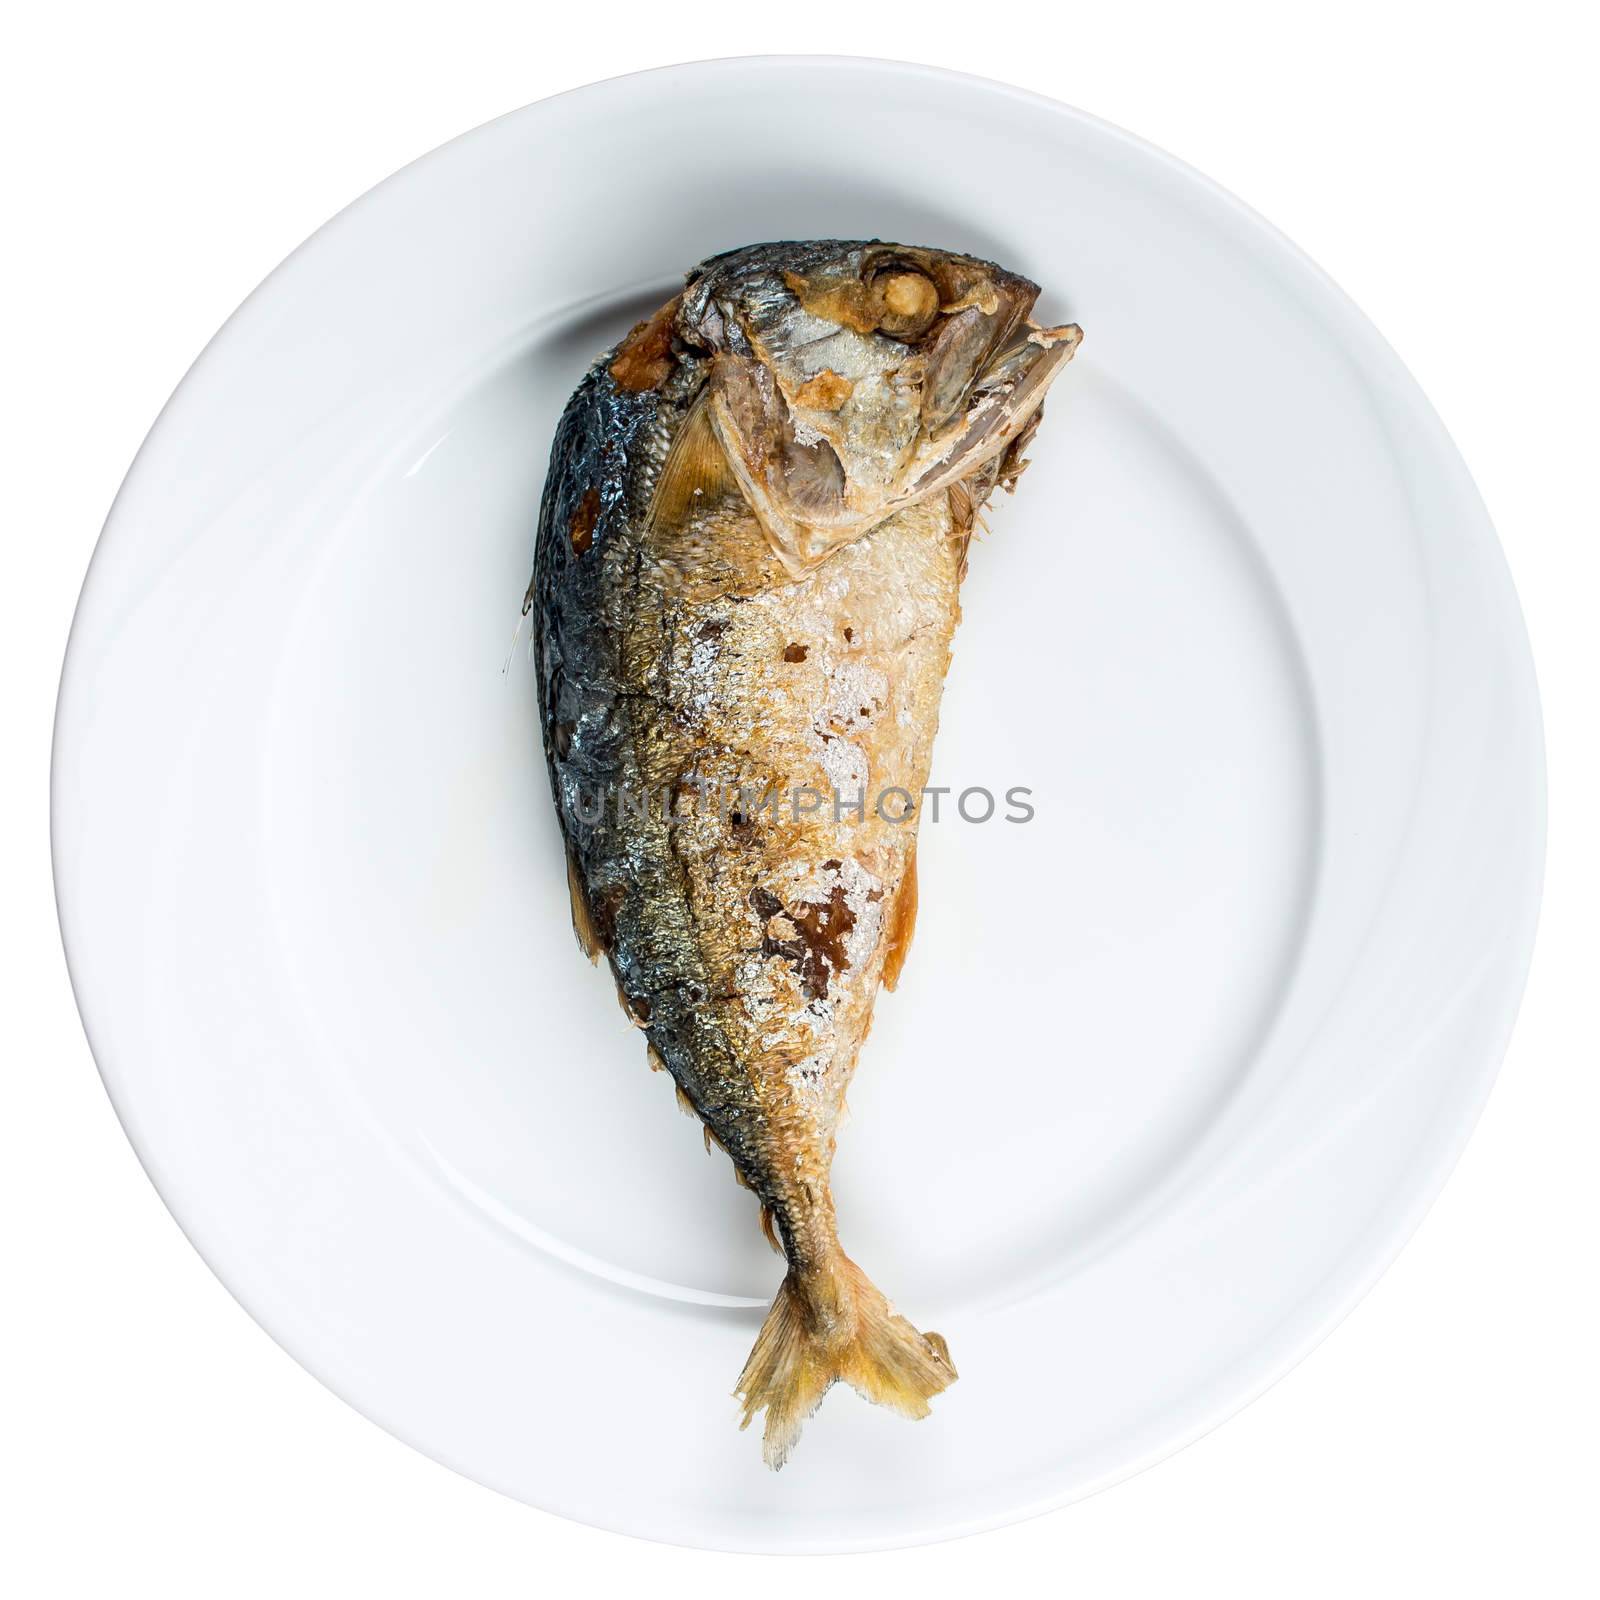 Fried mackerel by simpleBE